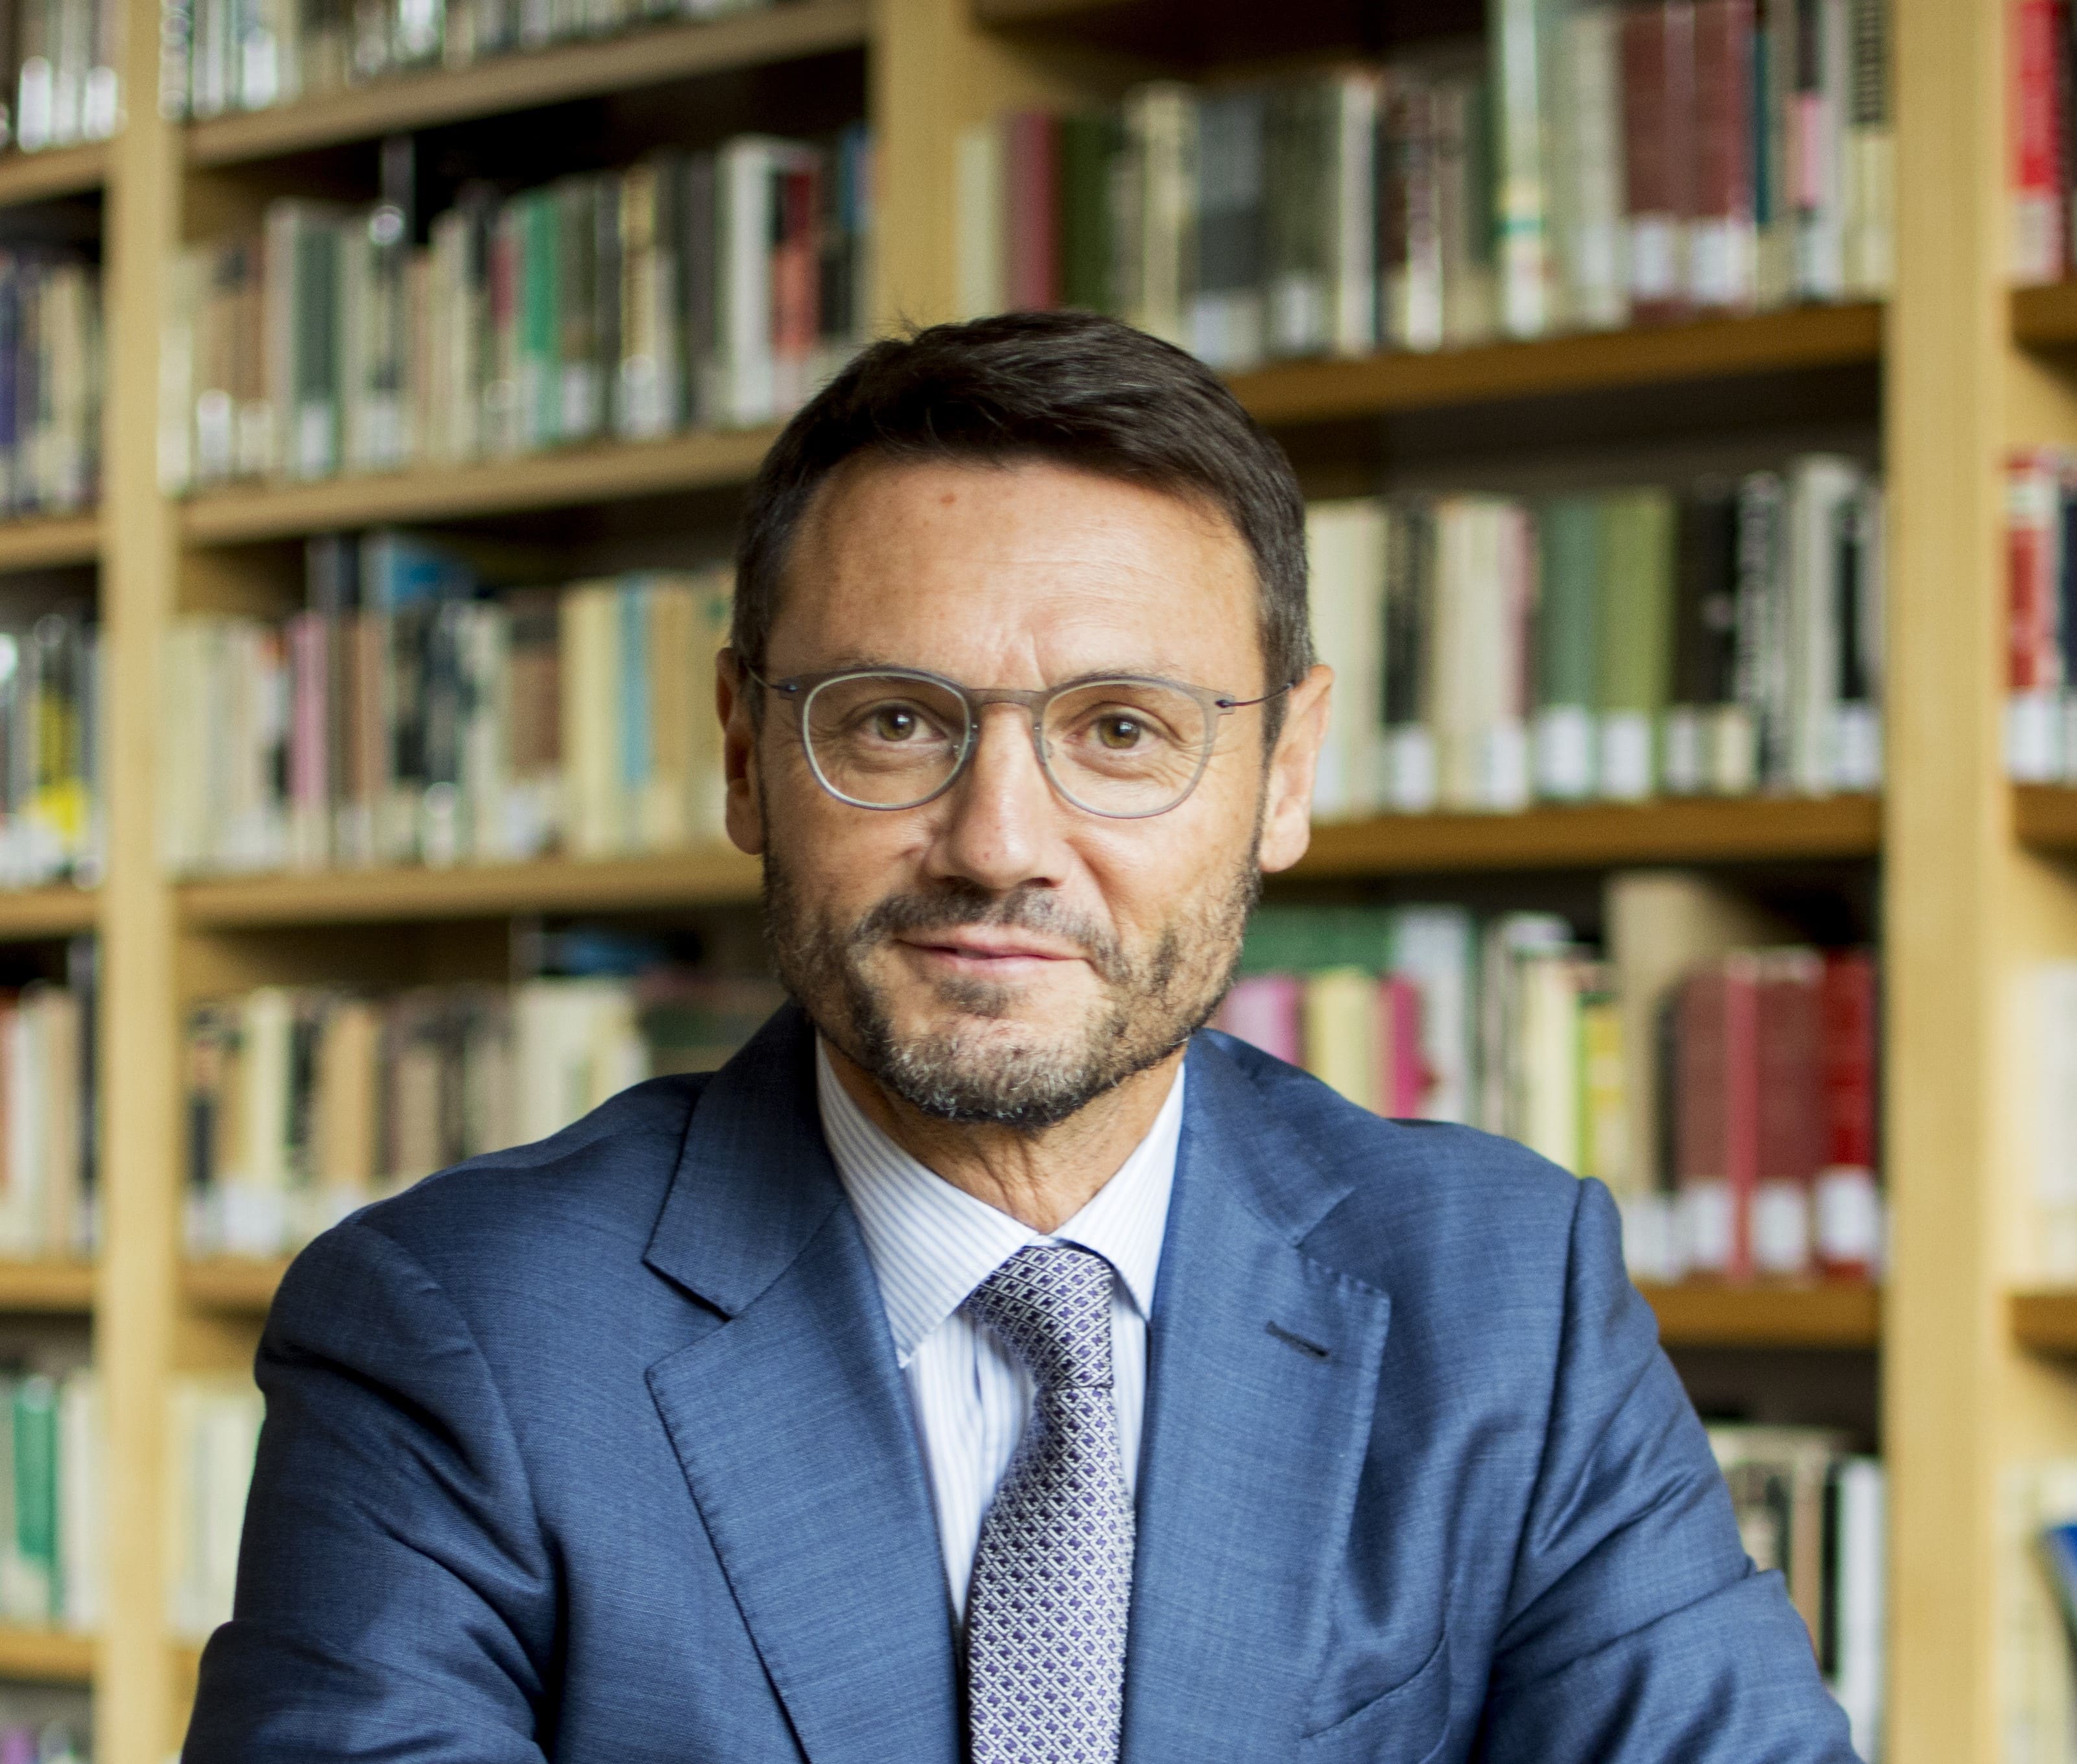 Débats & Idées - Emmanuel Toniutti : Le Covid-19 est une opportunité pour inventer un leadership responsable